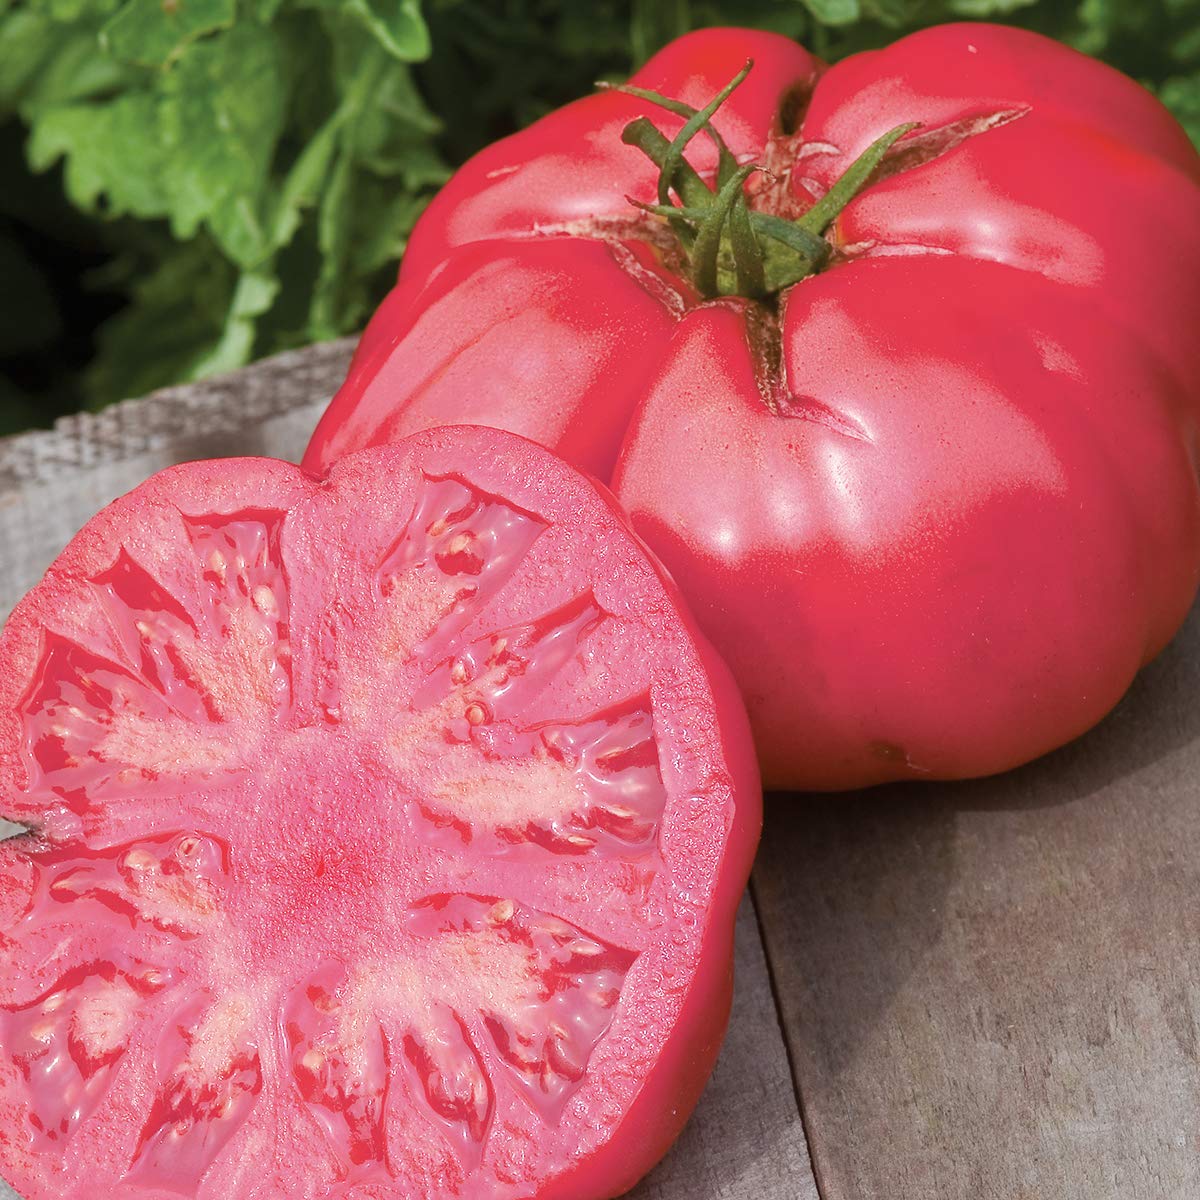 SteakHouse Hybrid Non-GMO Large Beefsteak Garden Produces Giant 3 LB Fresh Tomato Seeds